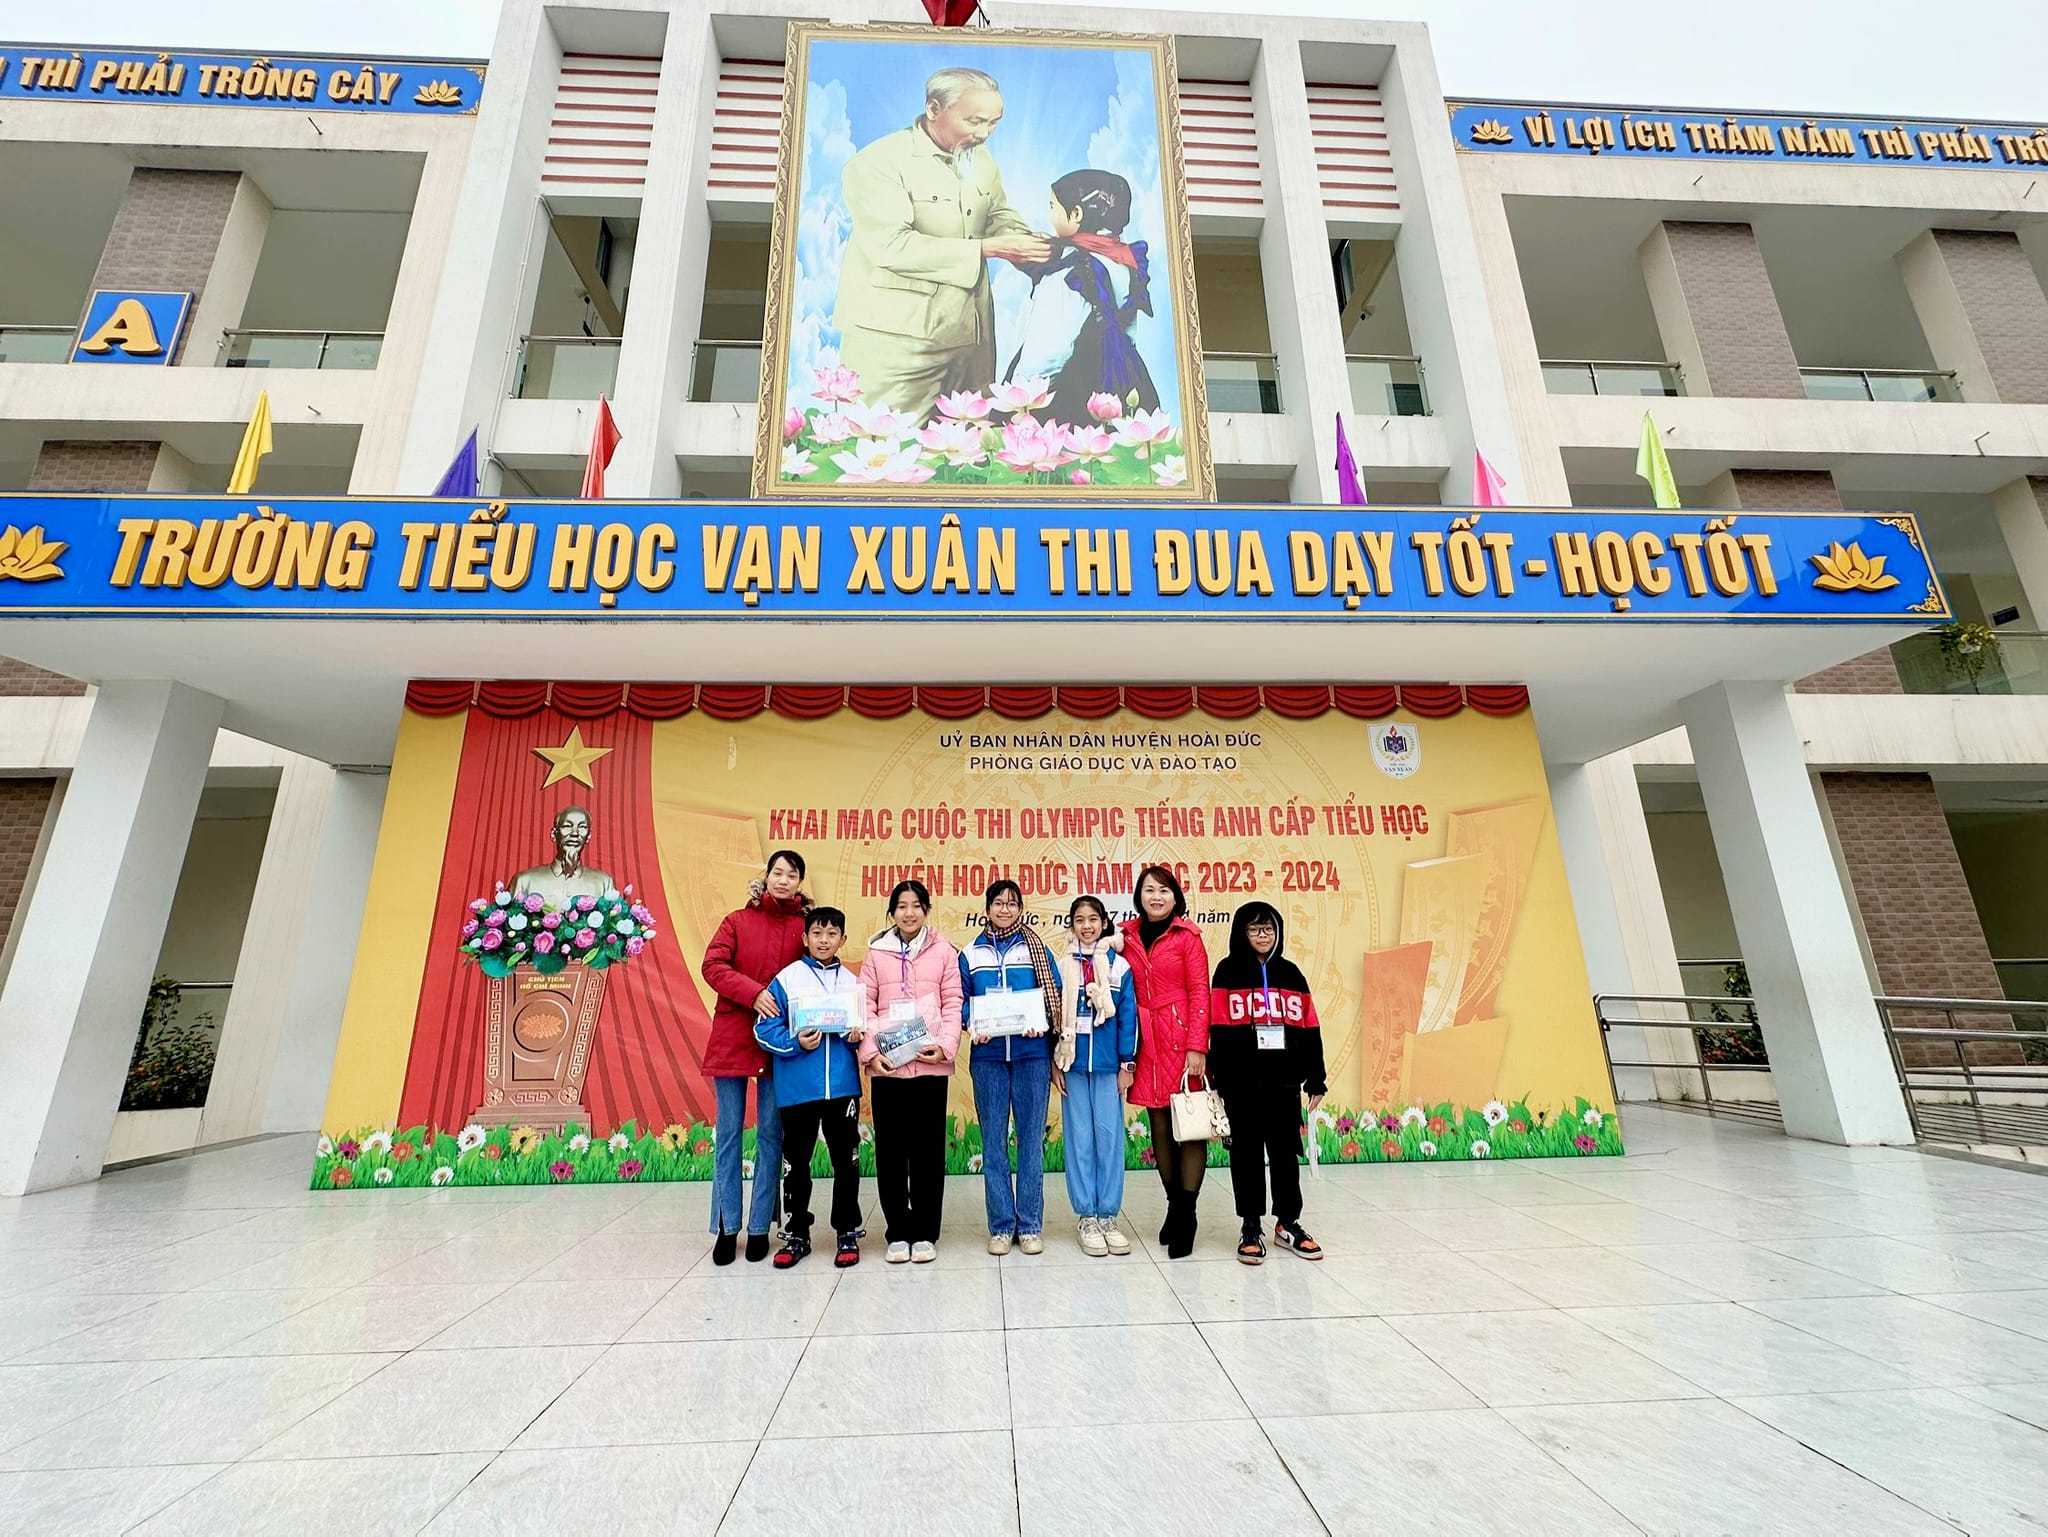  Học sinh trường Tiểu học Vân Canh tham gia vòng SK cuộc thi Olympic Tiếng Anh và CK sân chơi Hoa trạng nguyên cấp TH